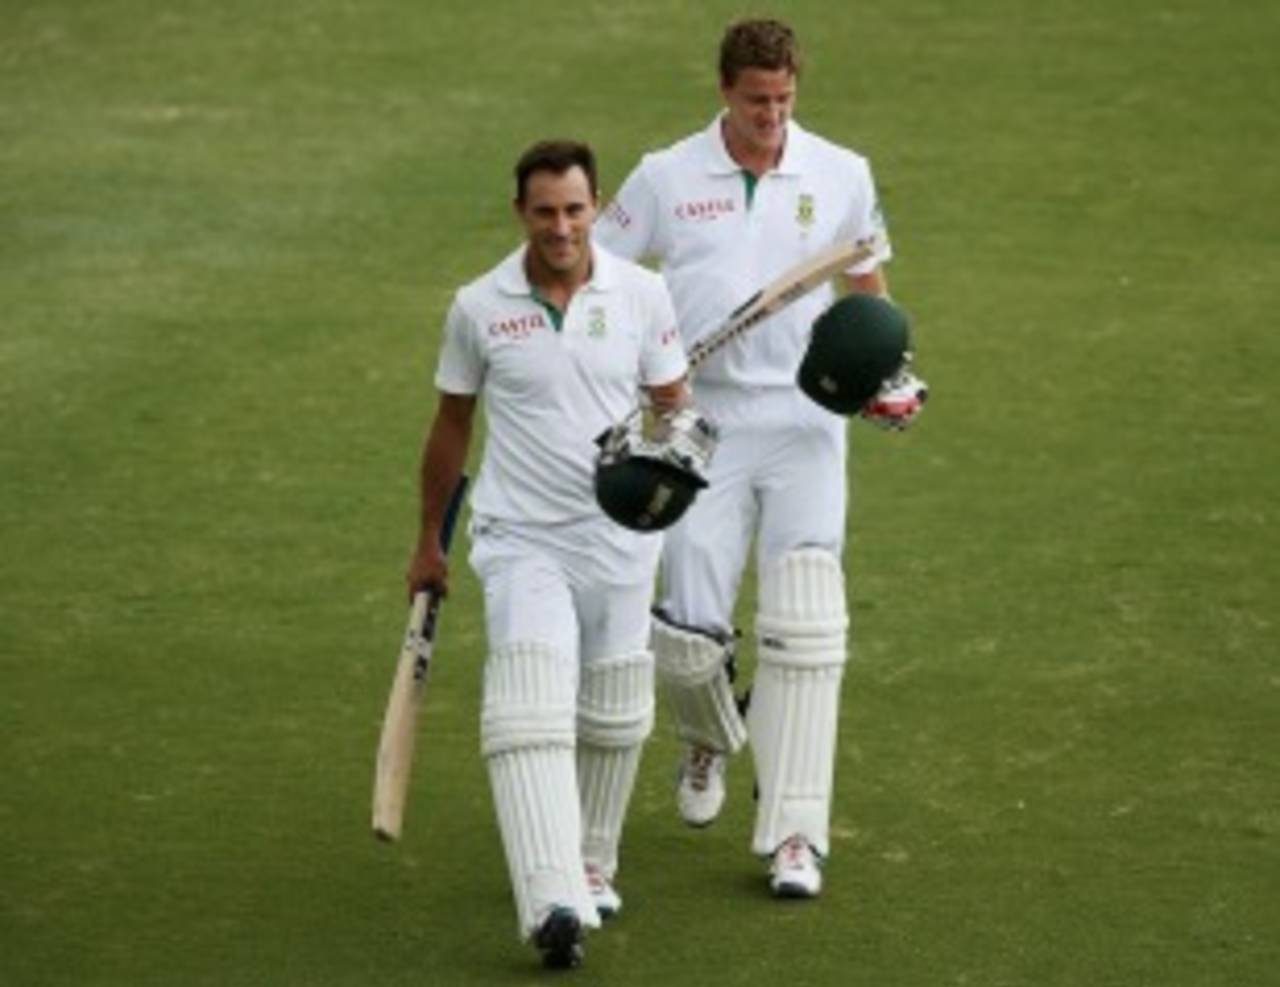 Faf du Plessis and Morne Morkel walk off after saving the Test, Australia v South Africa, 2nd Test, Adelaide, 5th day, November 26, 2012